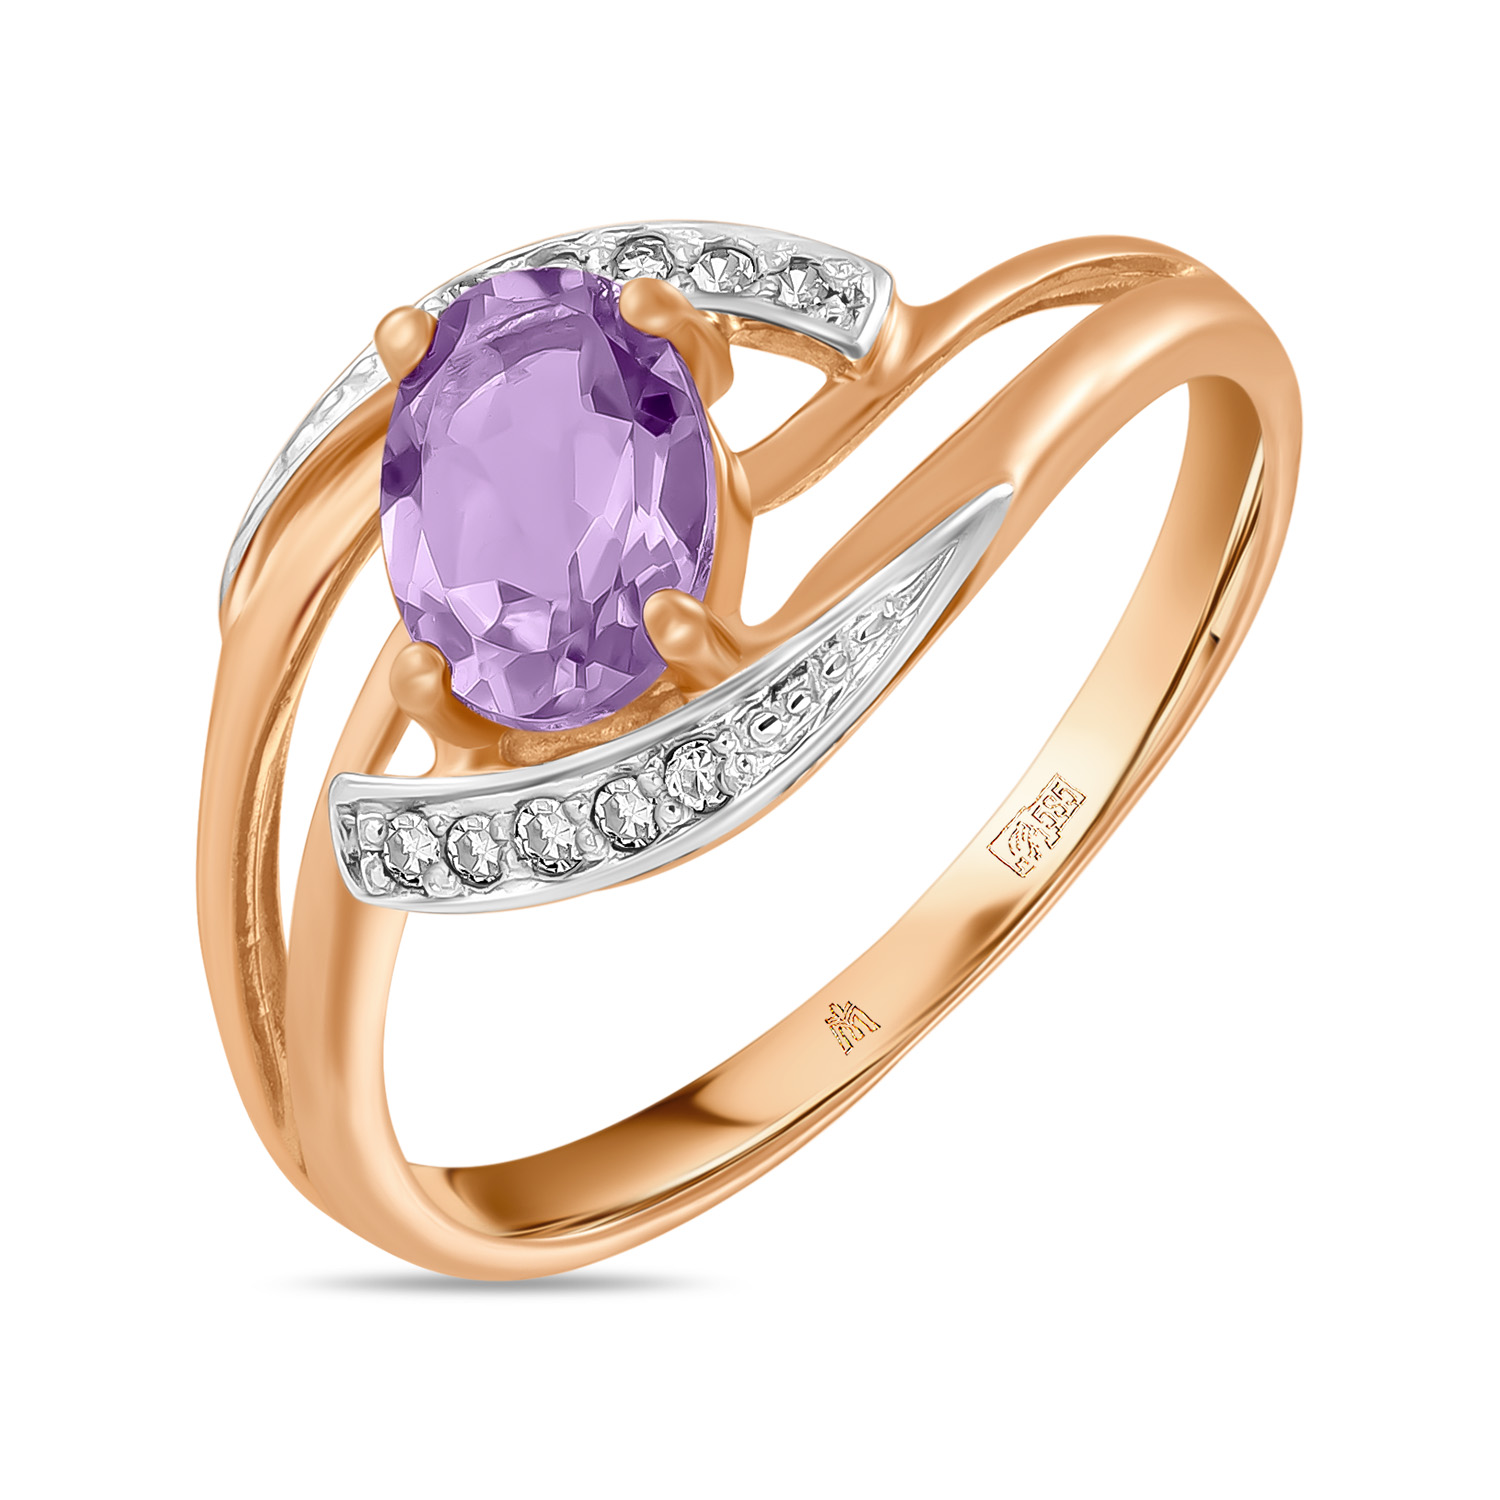 Кольца МЮЗ Золотое кольцо с аметистом и бриллиантами кольца мюз золотое кольцо с аметистом и бриллиантами